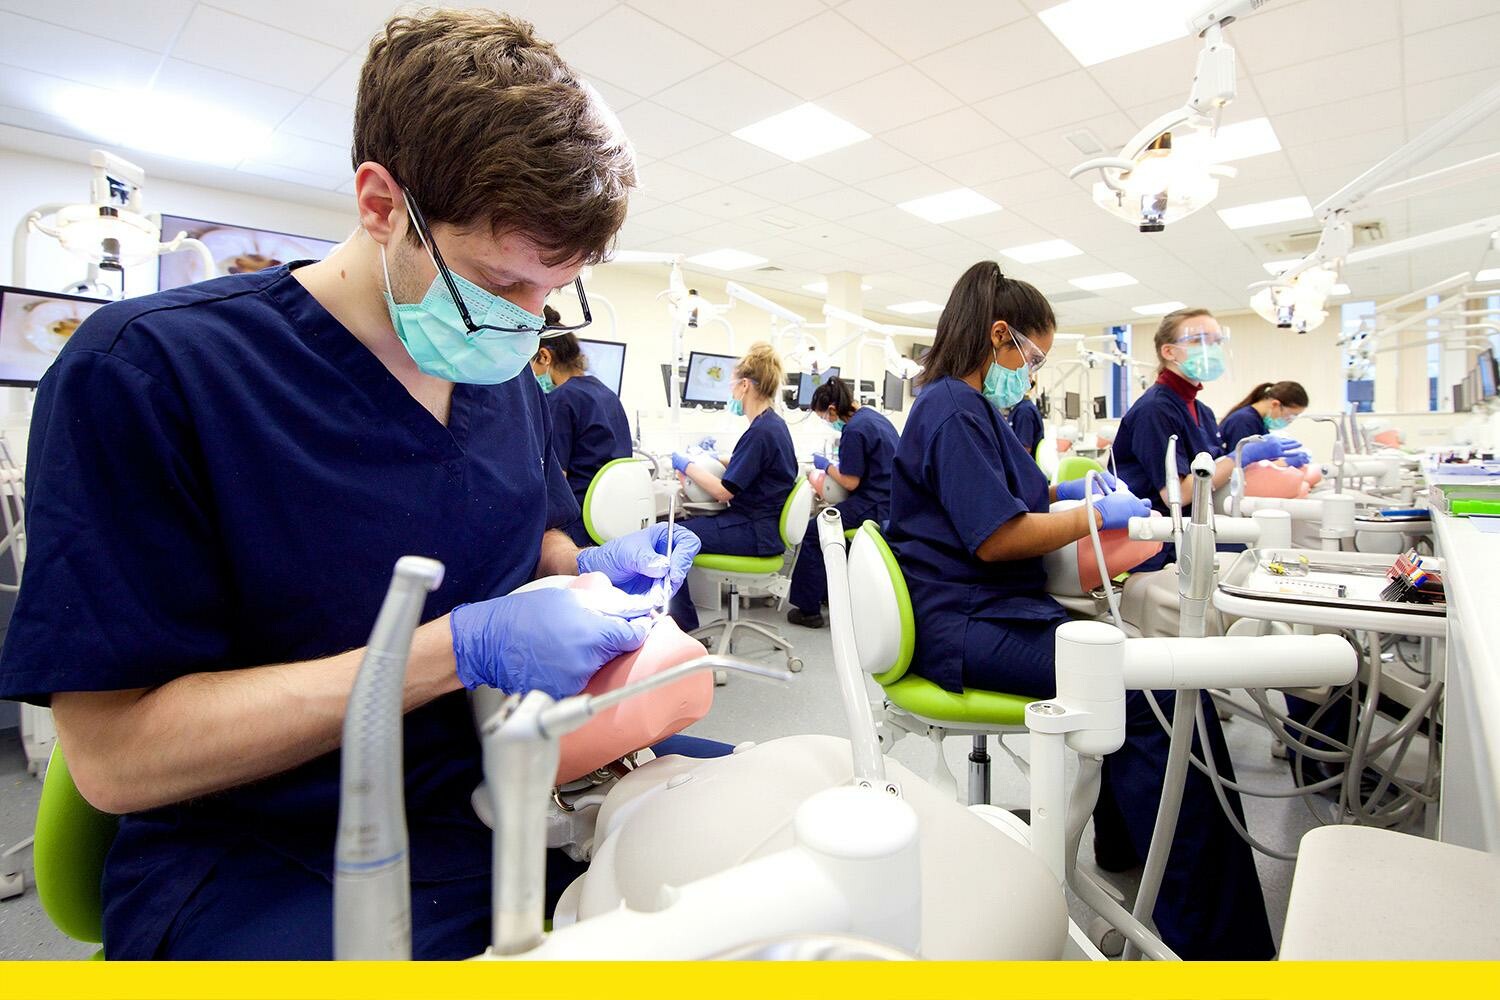 تعرف على أفضل الجامعات البريطانية لدراسة طب الأسنان 